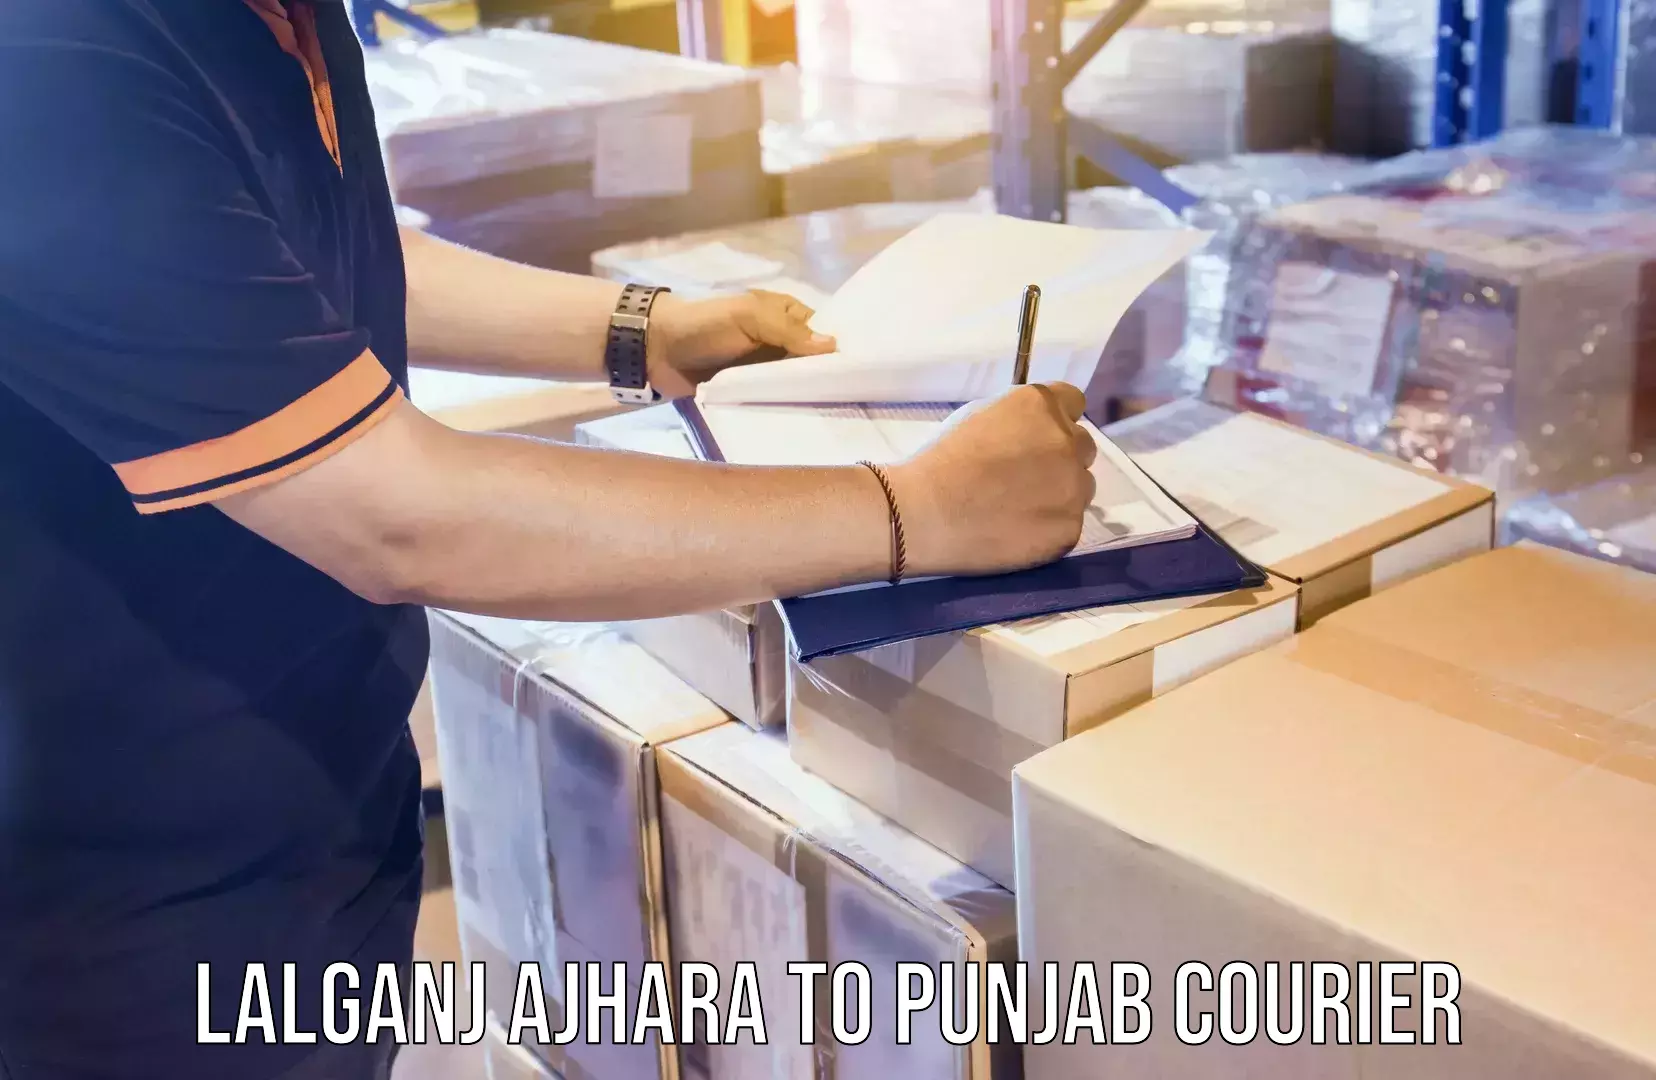 Home moving experts Lalganj Ajhara to Punjab